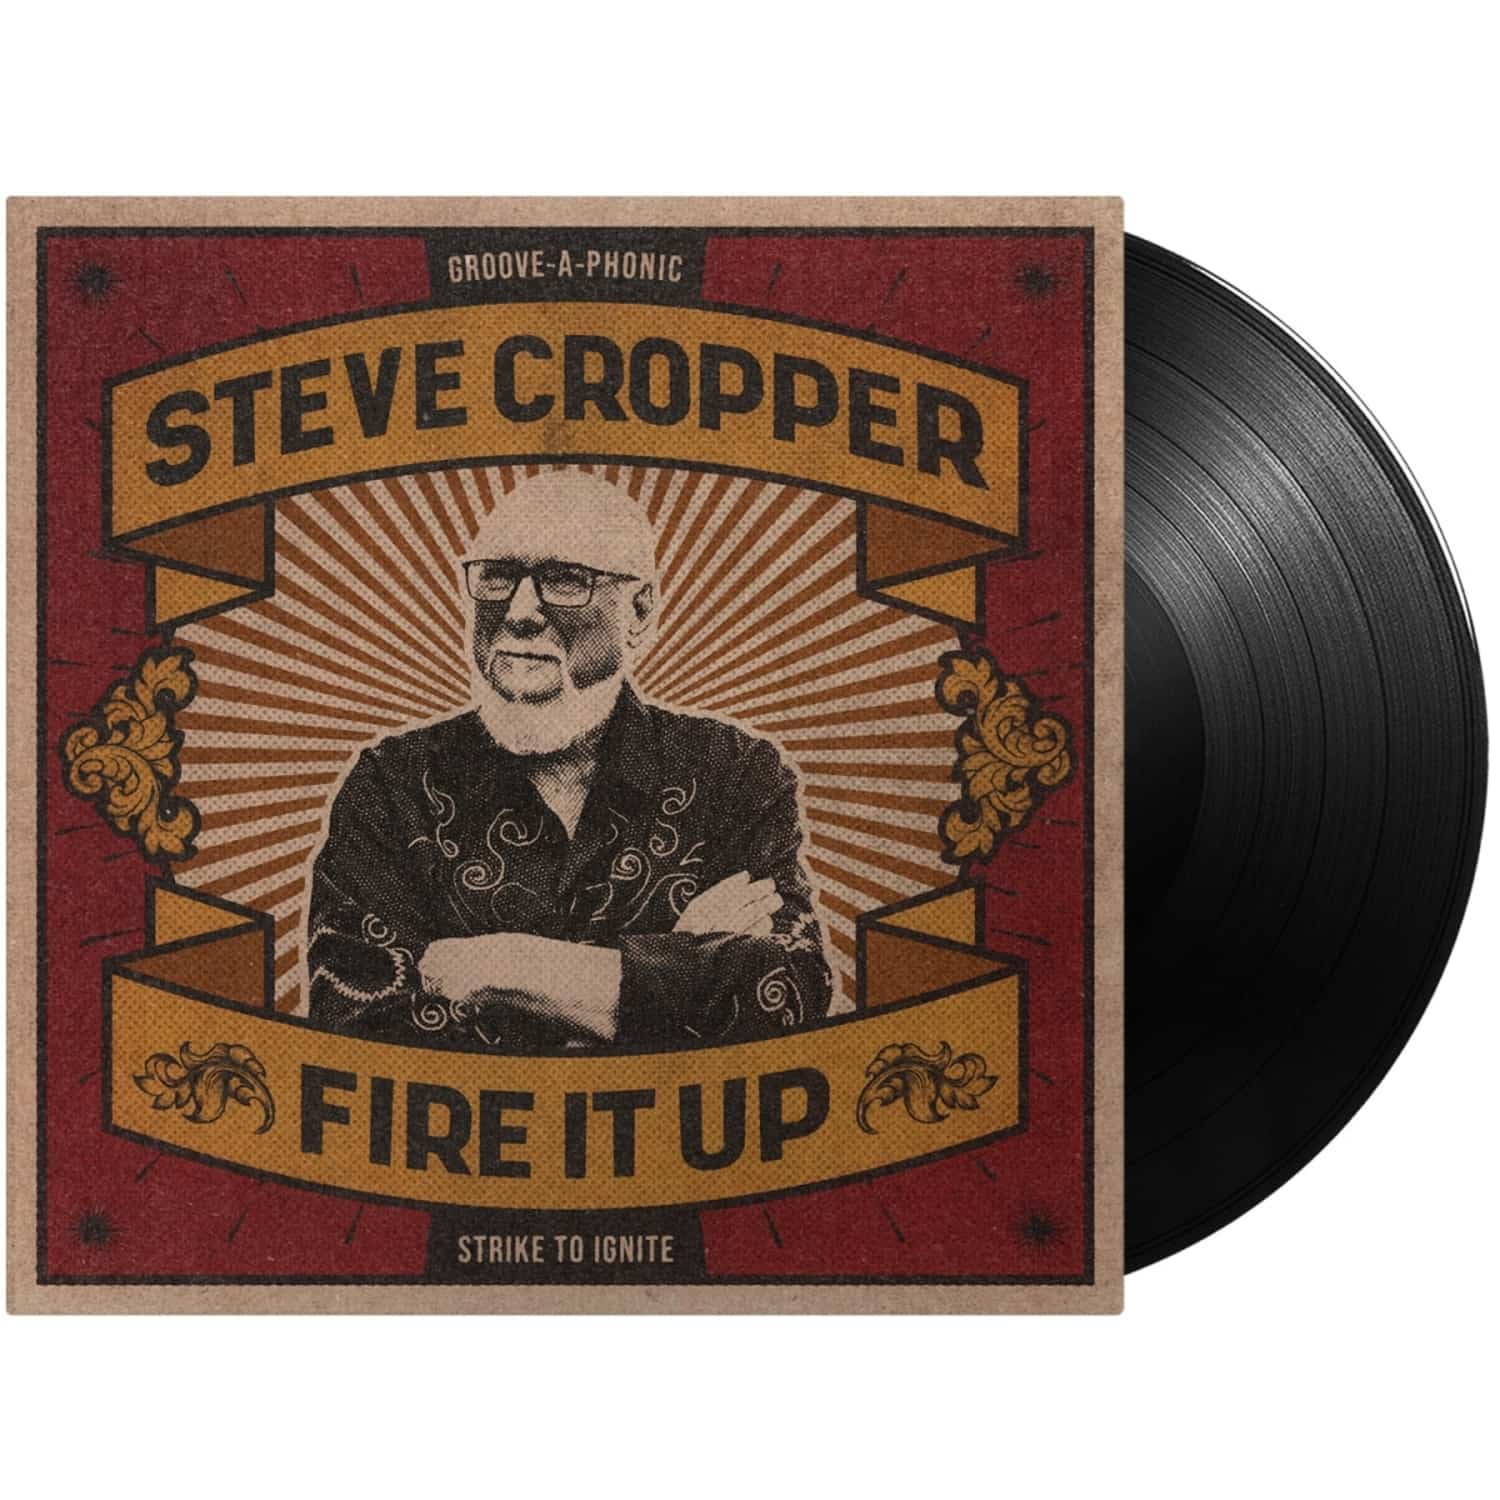 Steve Cropper - FIRE IT UP 